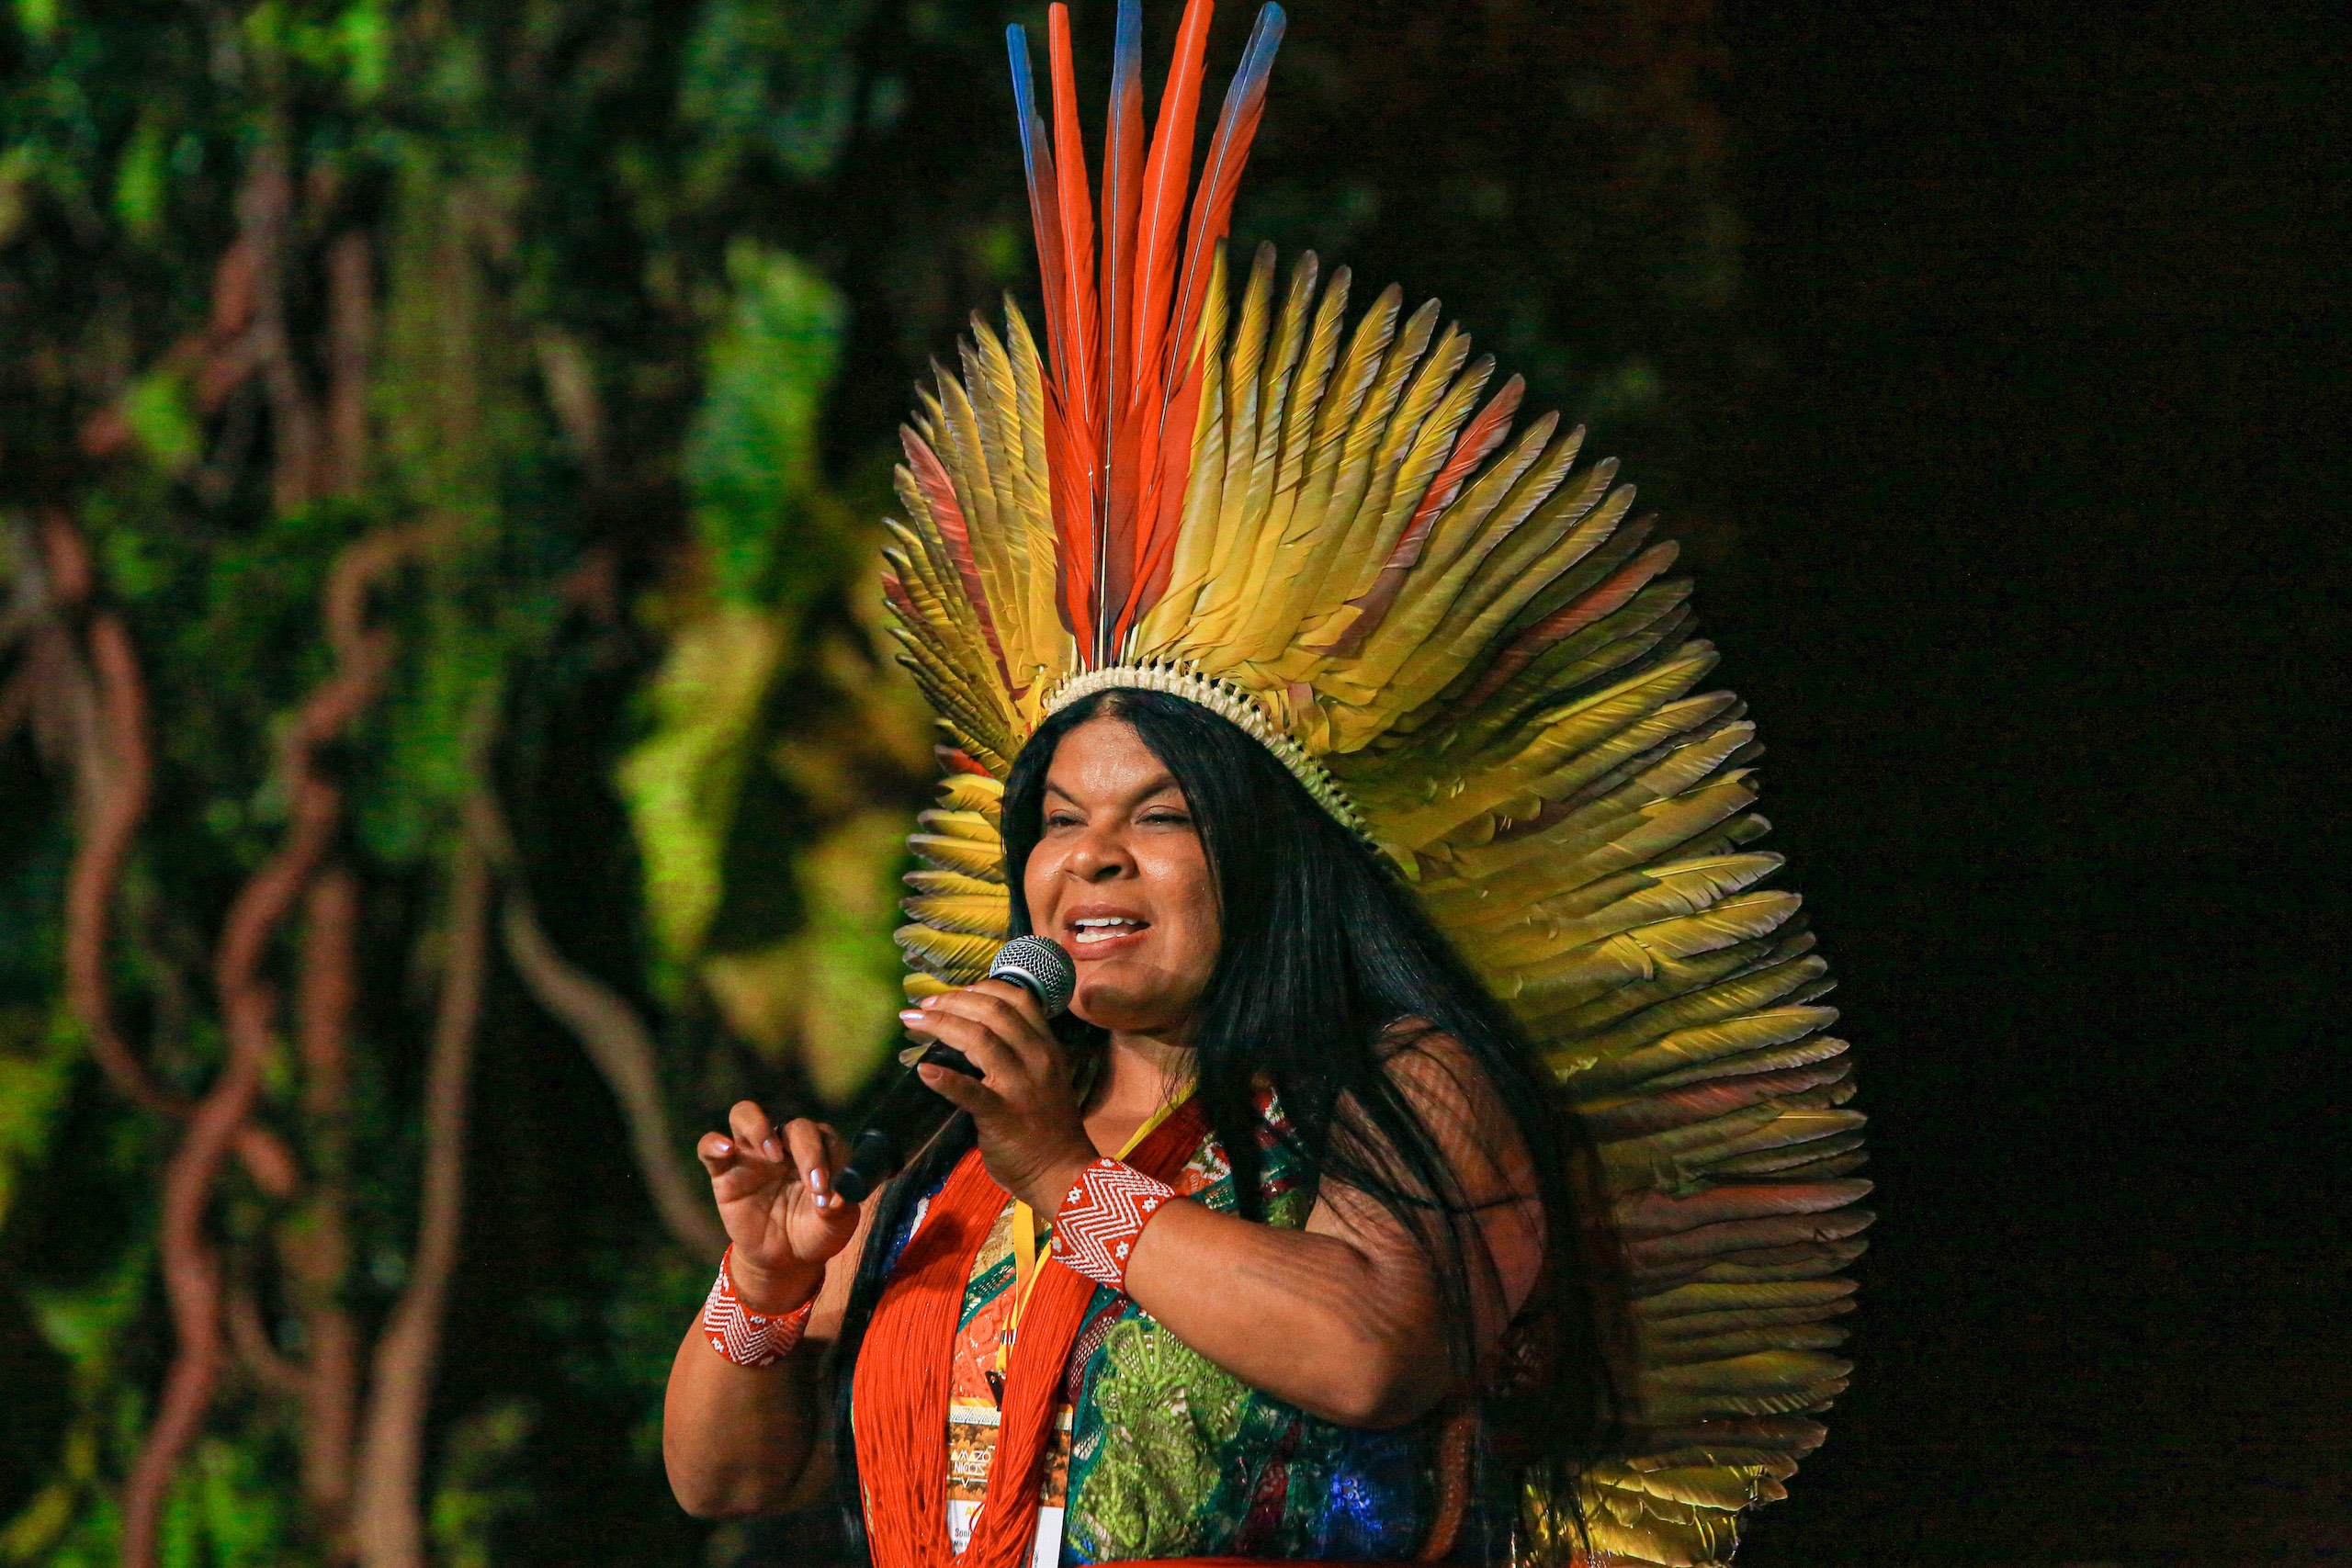 Sonia Guajajara habla con un micrófono en la mano, vestida con un traje tradicional indígena